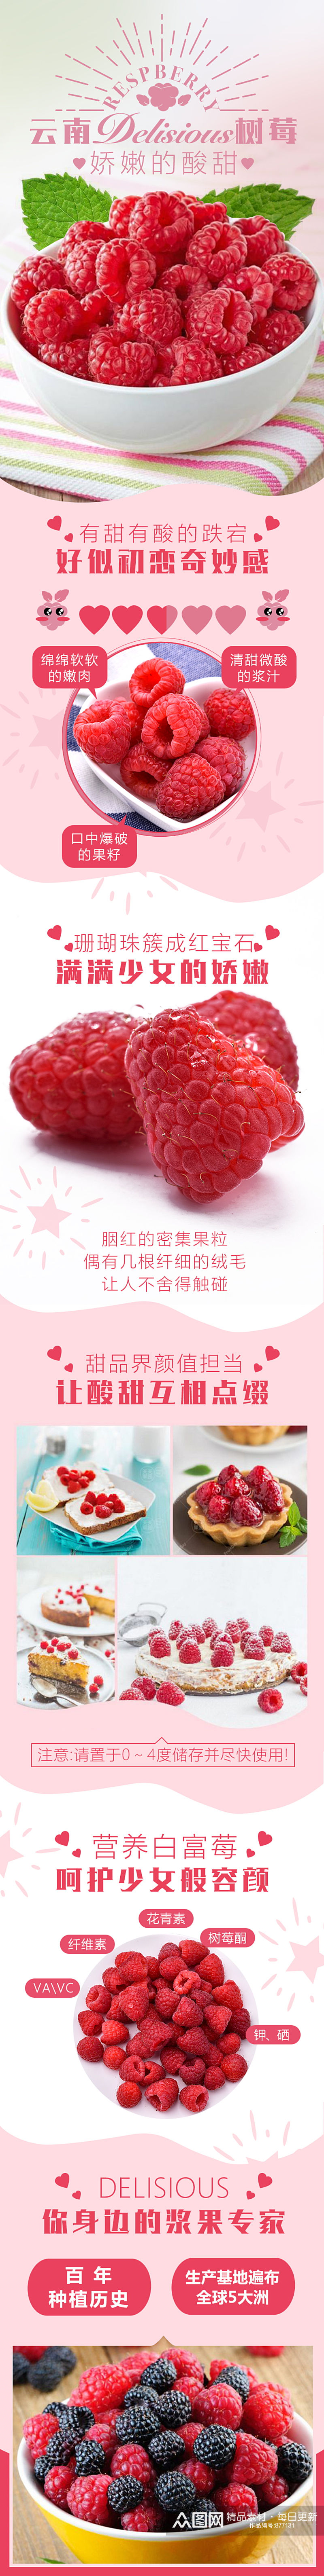 红色云南树莓淘宝详情页素材